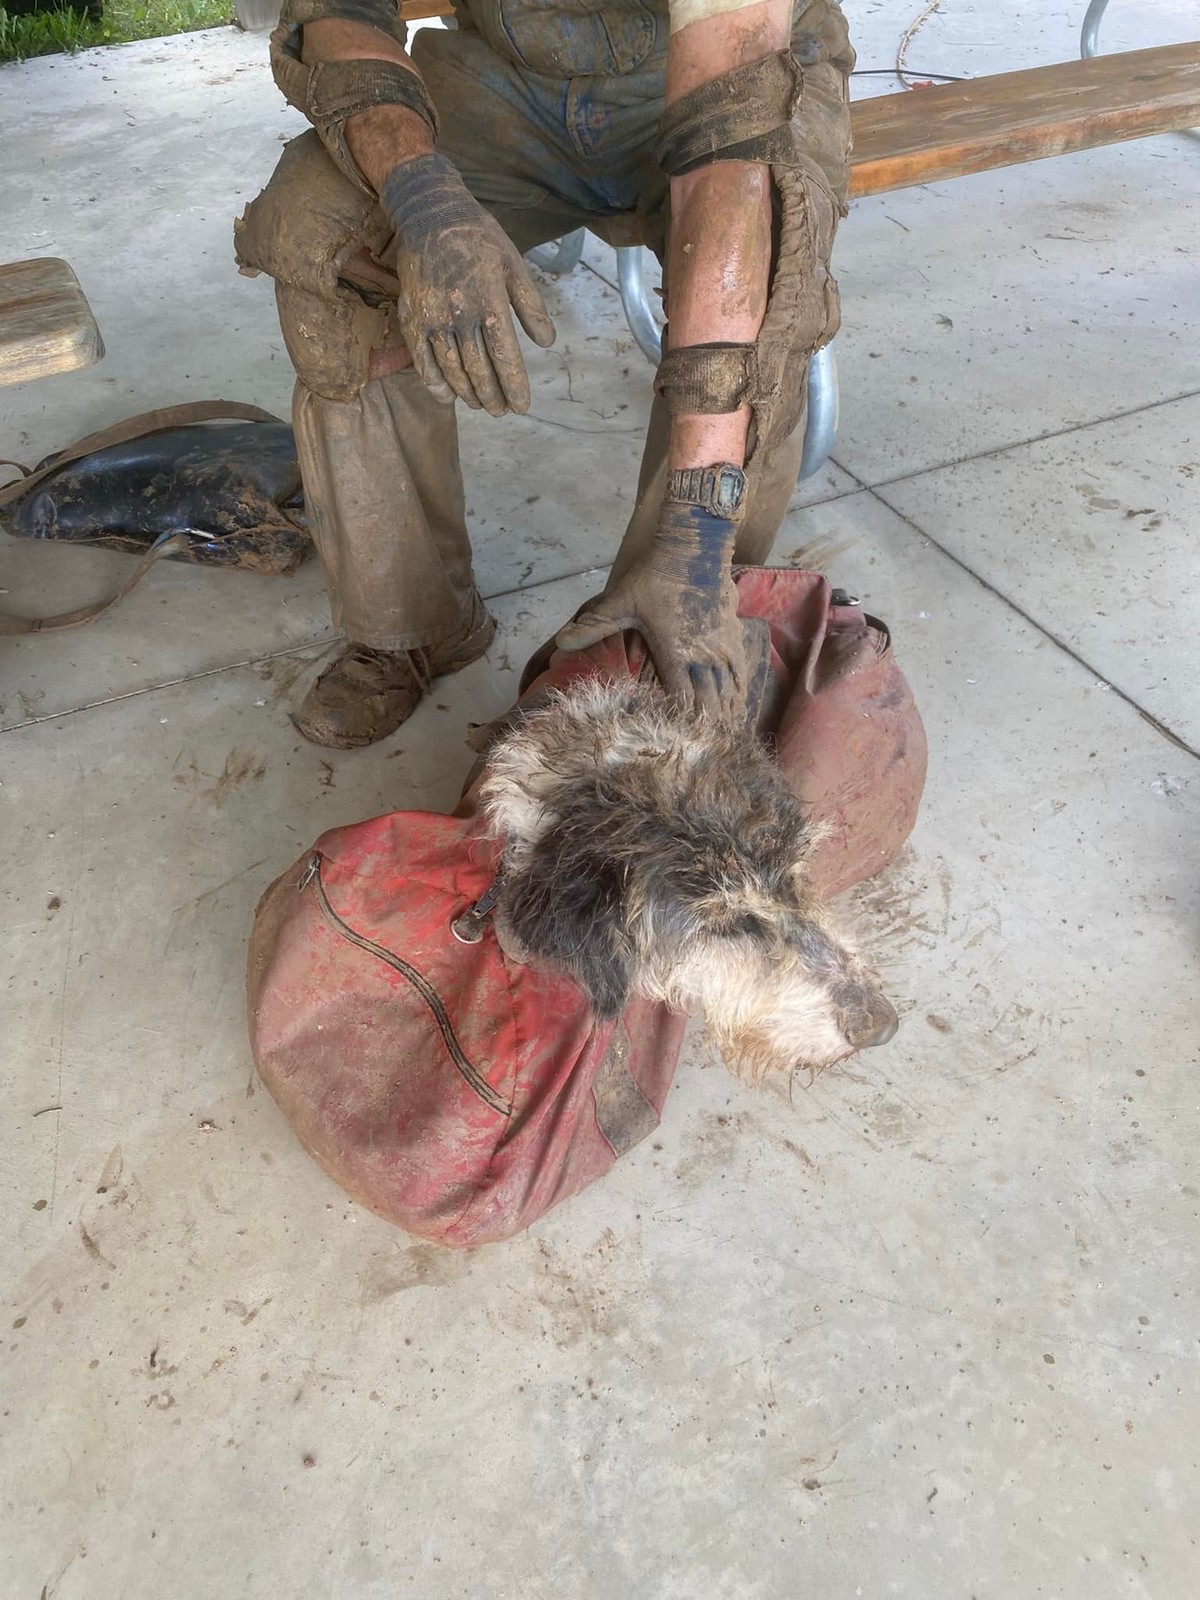 Perro encontrado en una cueva de Missouri dos meses después de su desaparición |  Globalismo